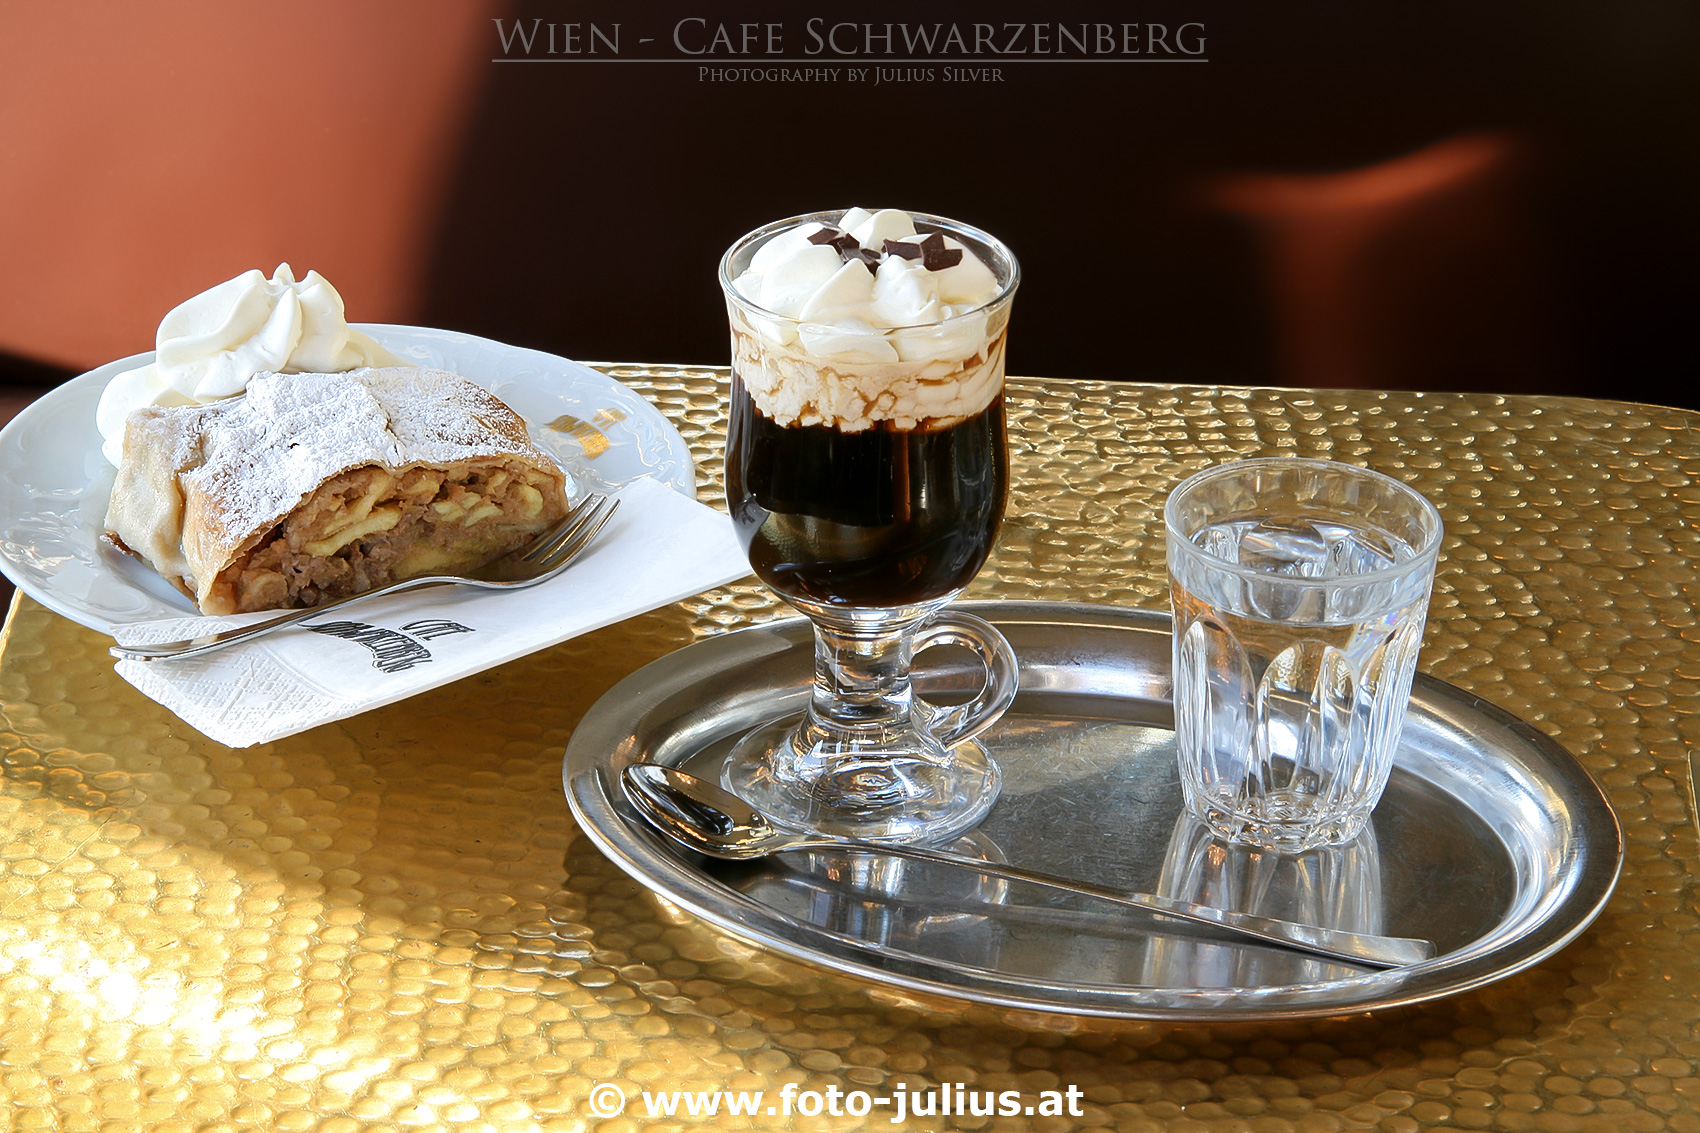 W2884a_Cafe_Schwarzenberg_Wien.jpg, 737kB